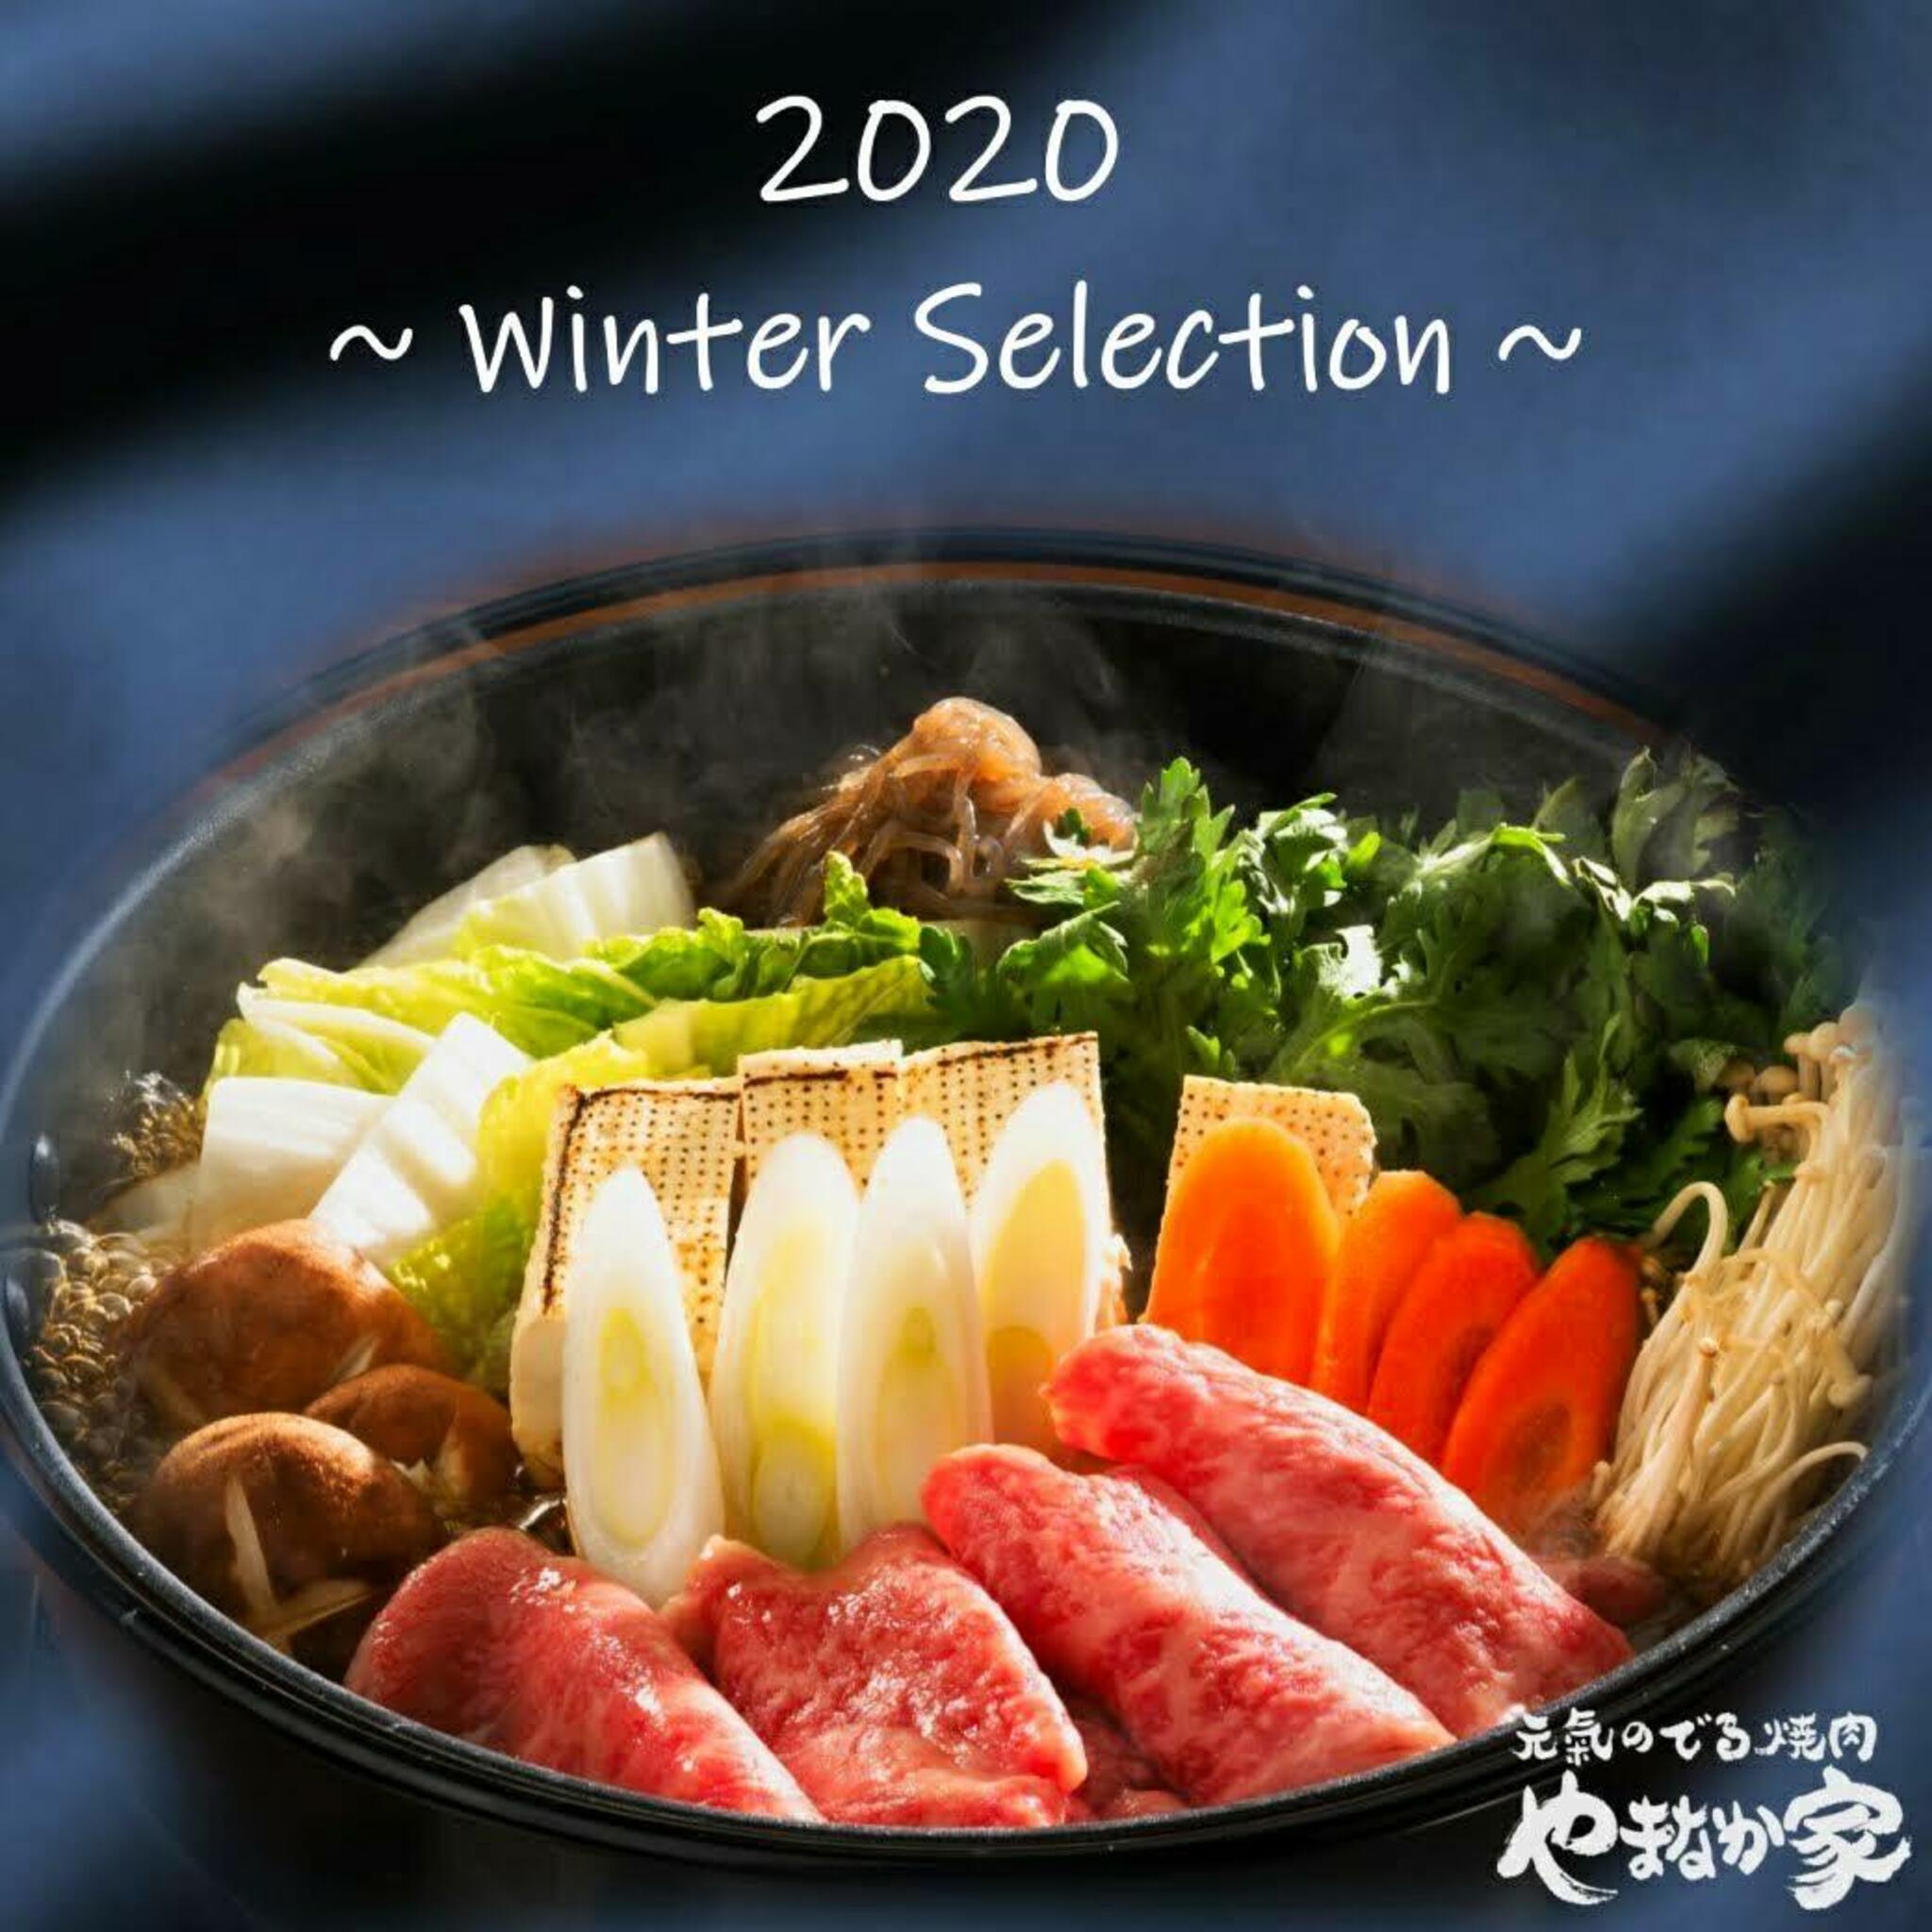 焼肉冷麺やまなか家 上田バイパス店からのお知らせ(【やまなか家 2020 お歳暮】 )に関する写真